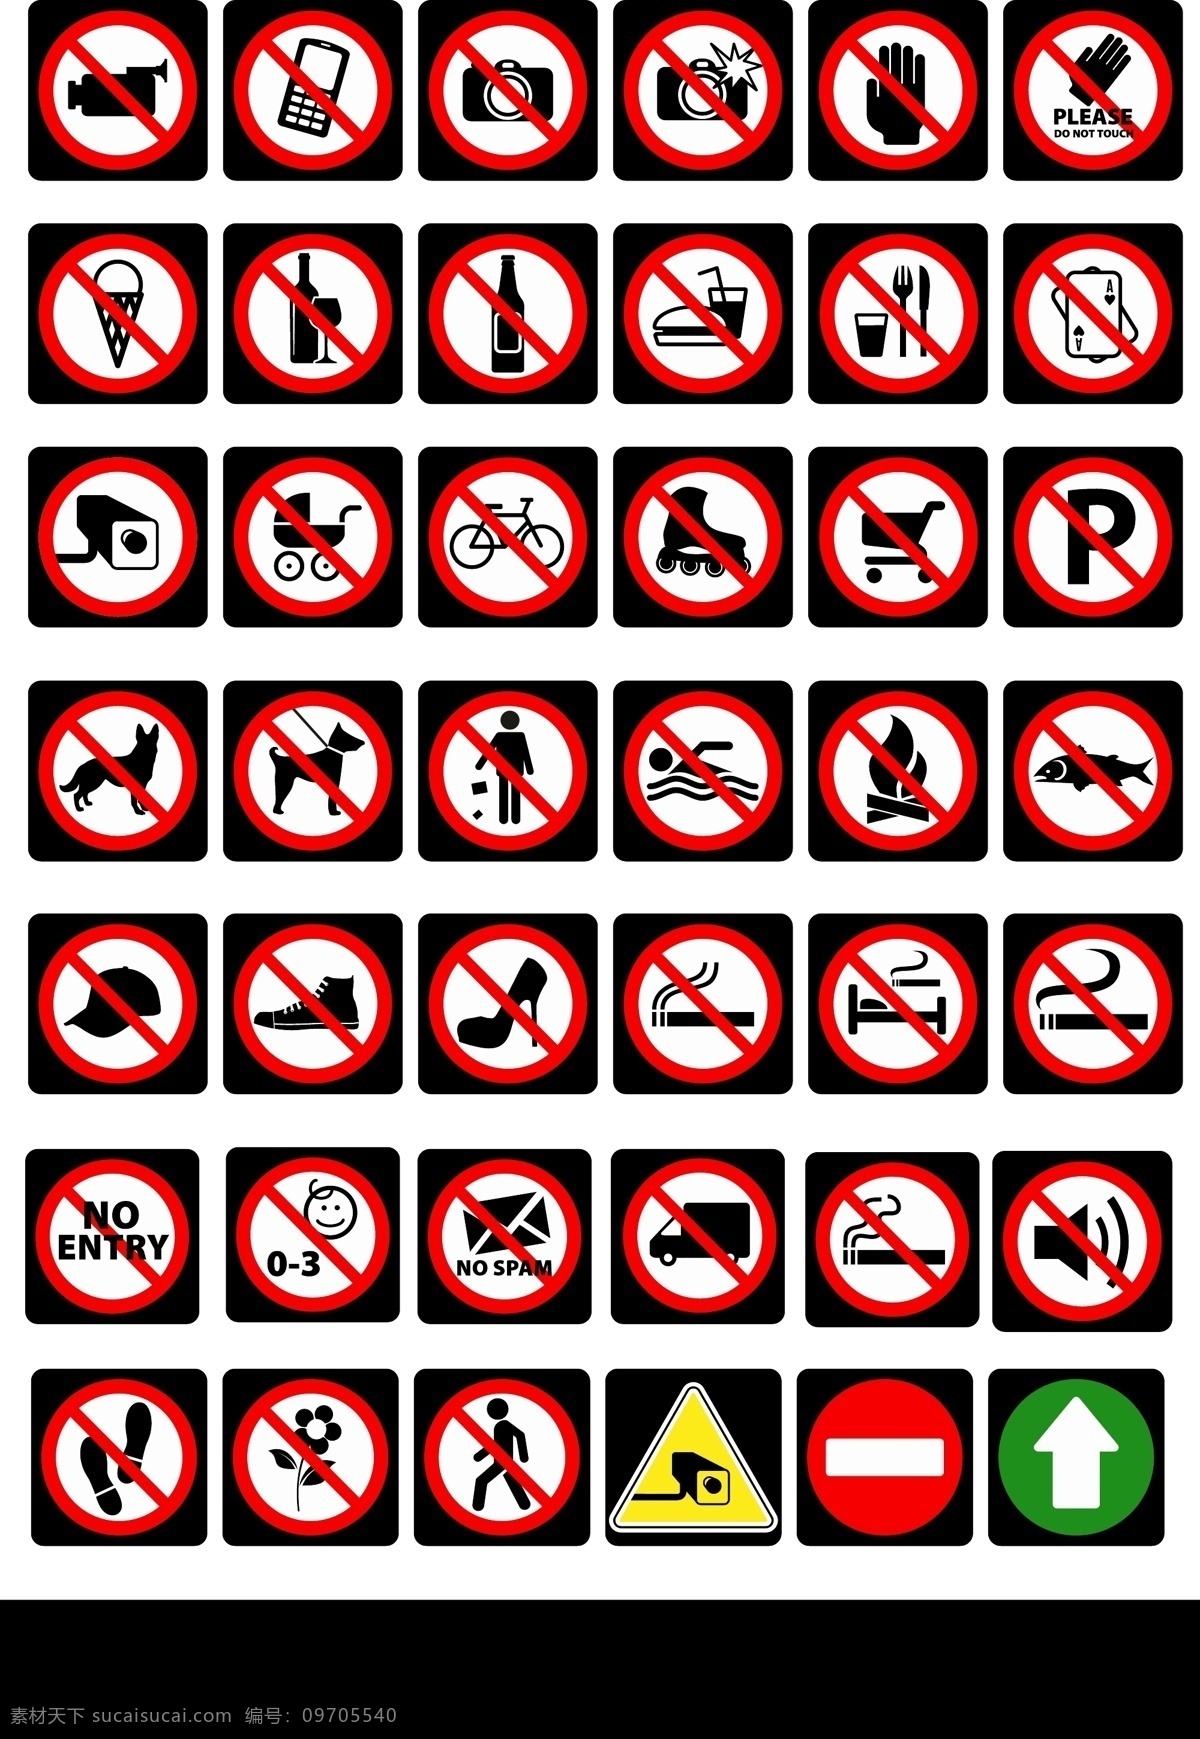 警告标识 公共标识 安全警示牌 禁止标志 道路交通 施工标志 工地标志牌 道路标示 交通标志 公共标示牌 矢量高清大图 安全通道 指示牌 公共标识标志 交通指示牌 警告 公共 标志图标